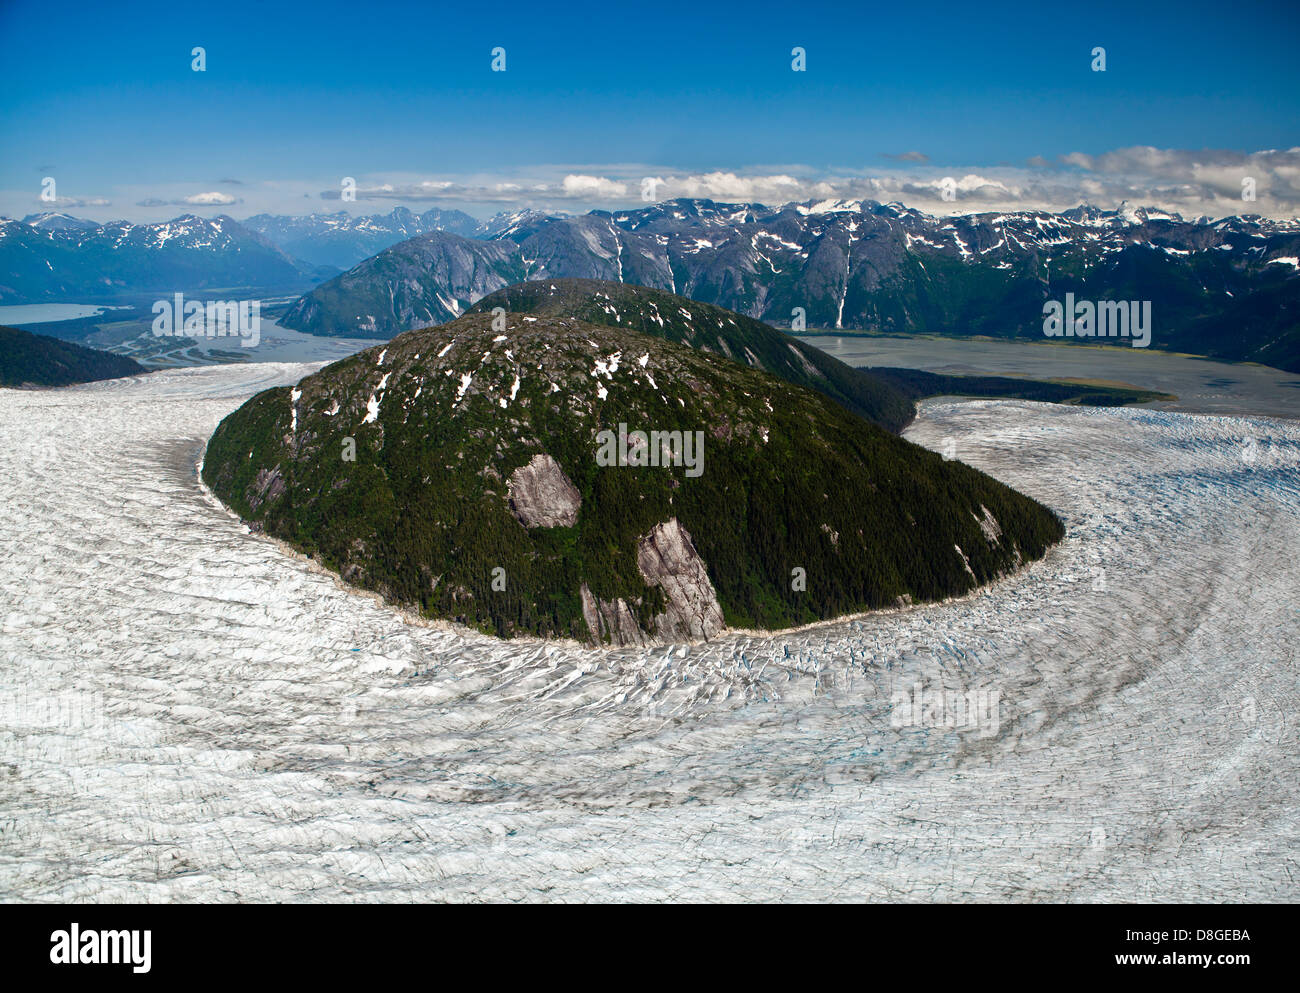 Photo d'une coupe de la nature sauvage de l'Alaska. Paysage magnifique au milieu de nulle part. Le monde de la nature à son meilleur. Banque D'Images